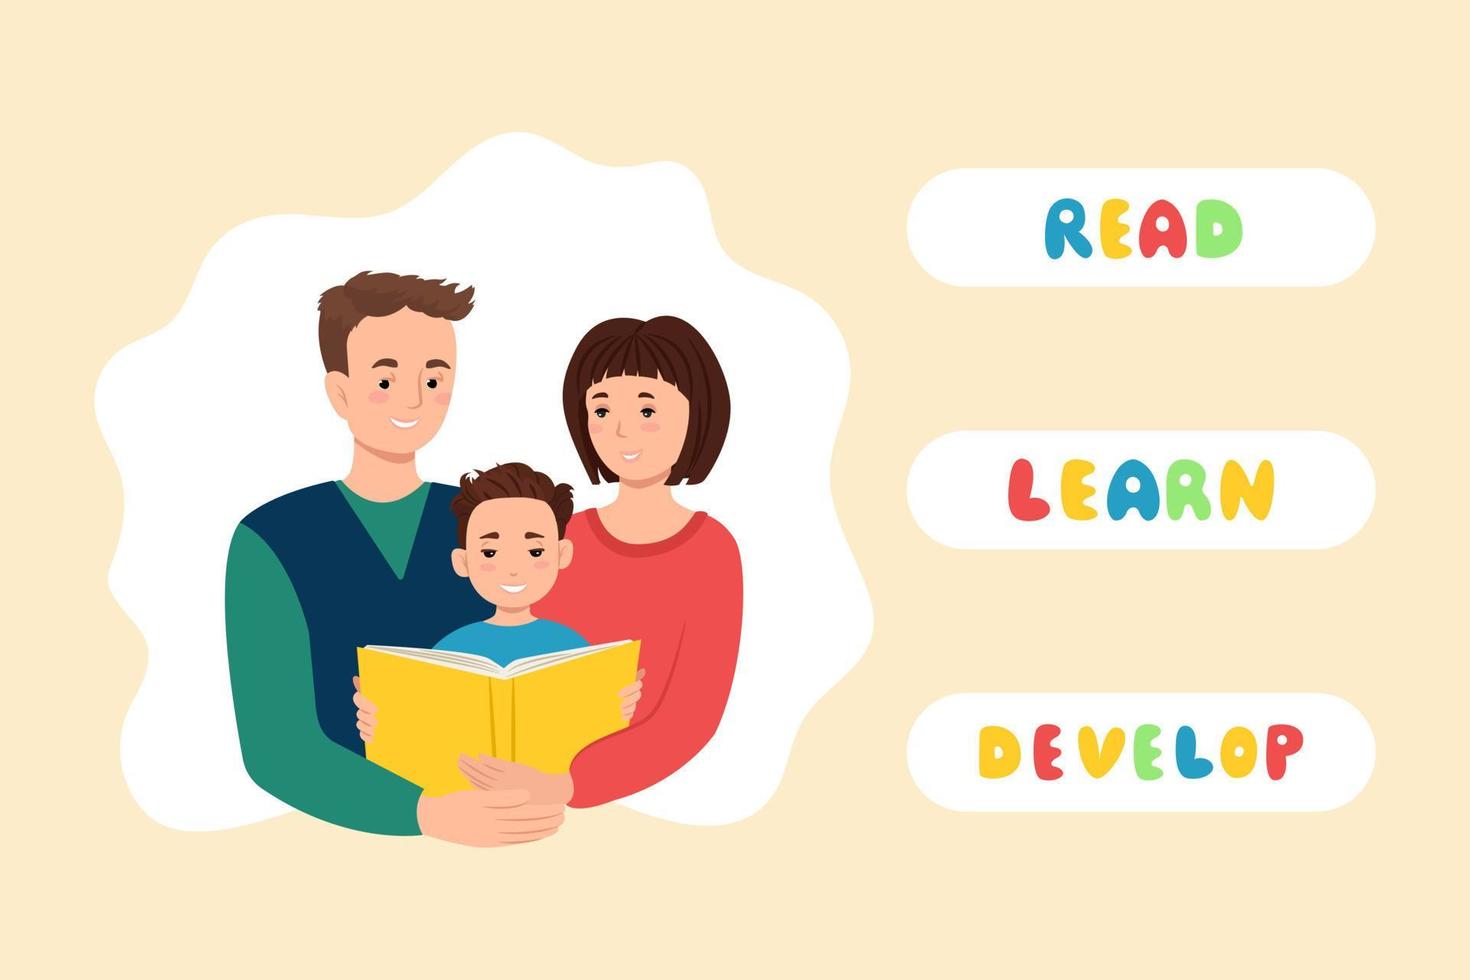 glada föräldrar med barn läser en bok banner. utbildning och studier, vektorillustration i platt stil vektor